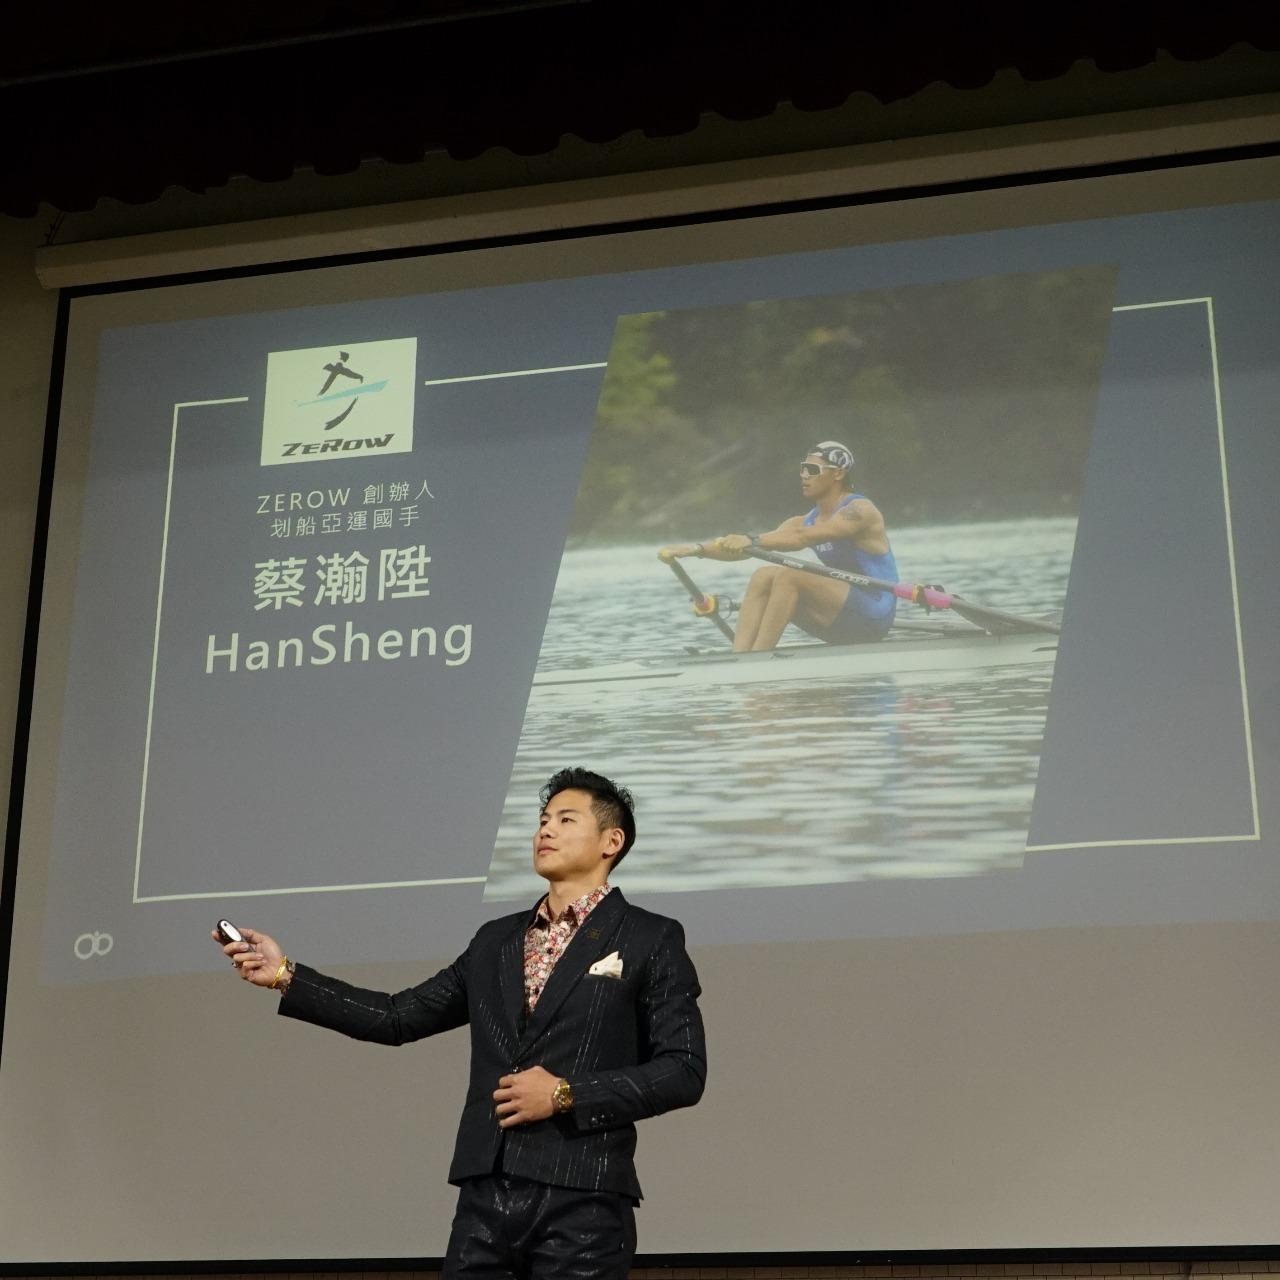 蔡瀚陞 HanSheng 運動員生涯規劃 專題演講 十年划一槳